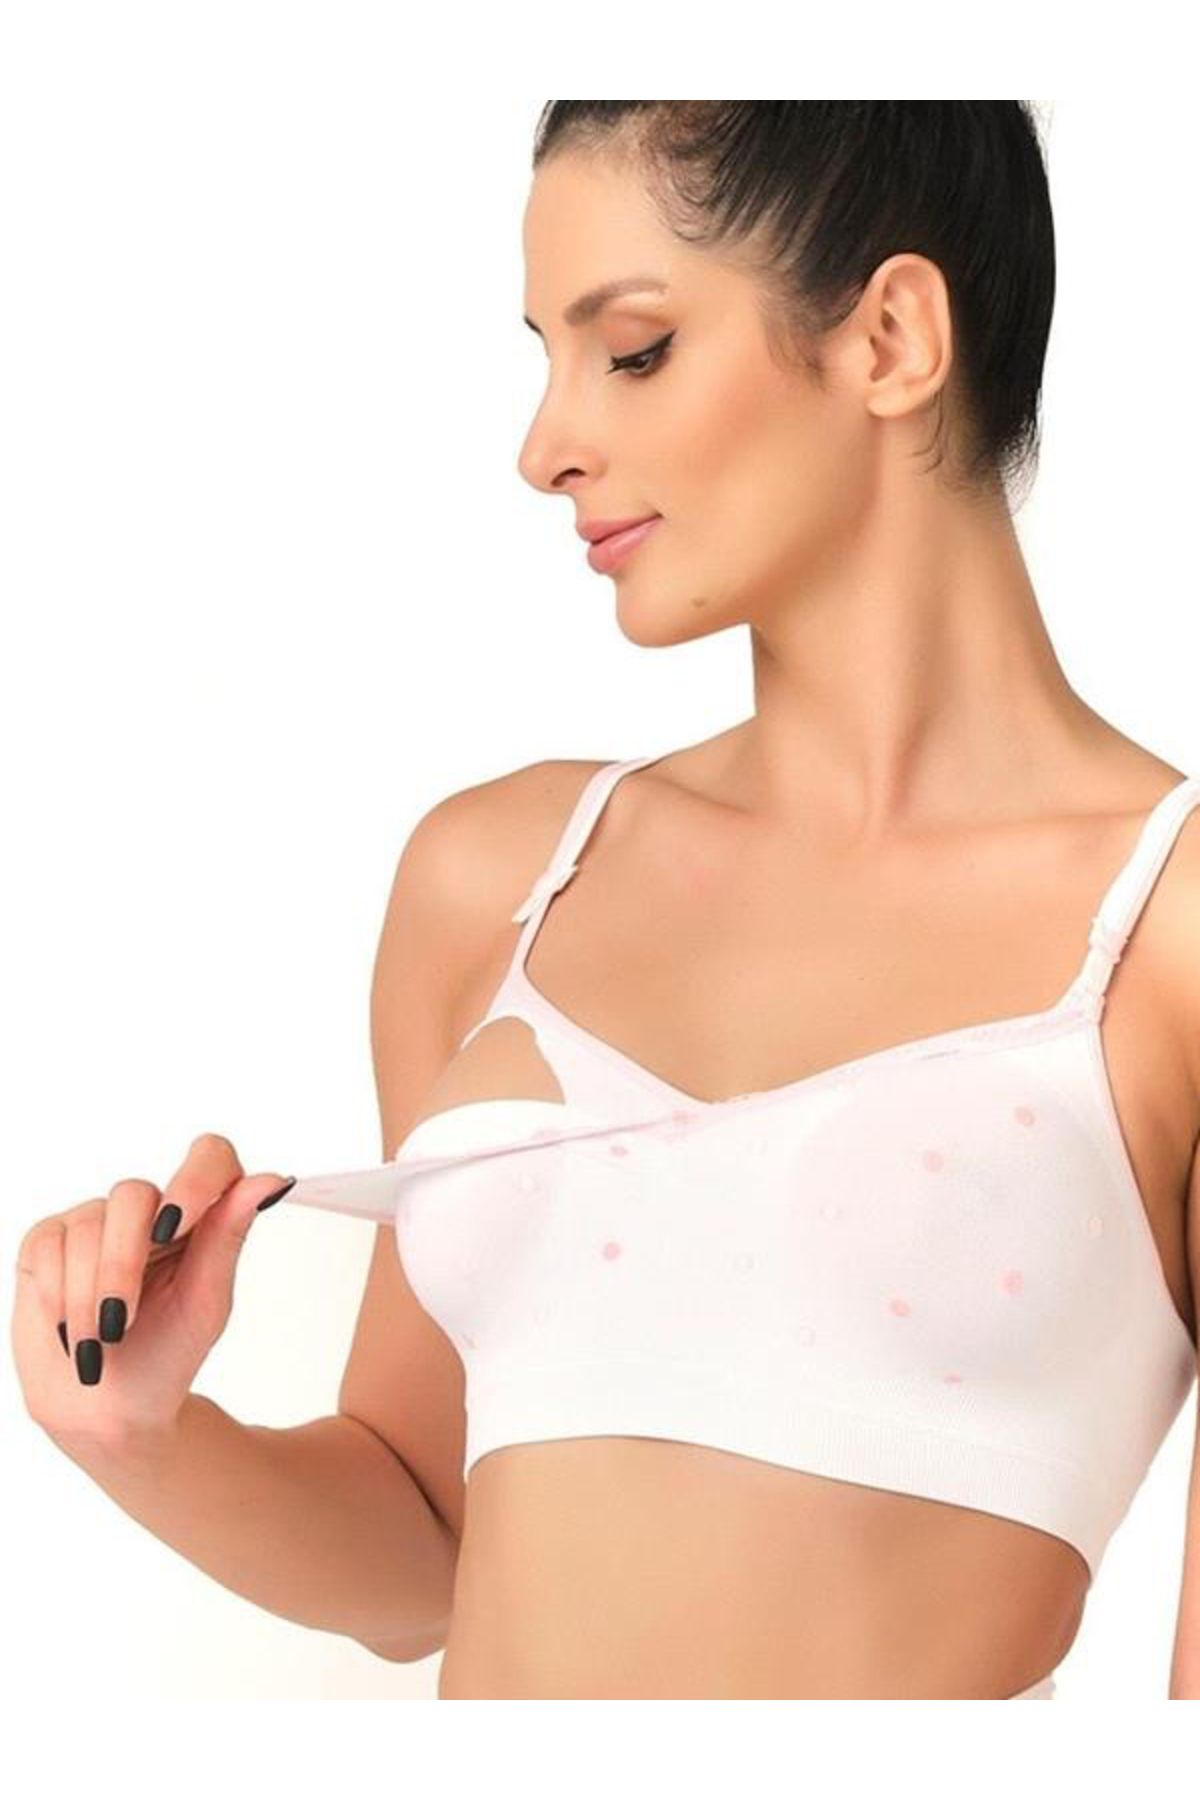 Narnuga Yeni Tasarım Toparlayıcı Kadın Hamile Emzirme Sütyeni 5310 Beyaz